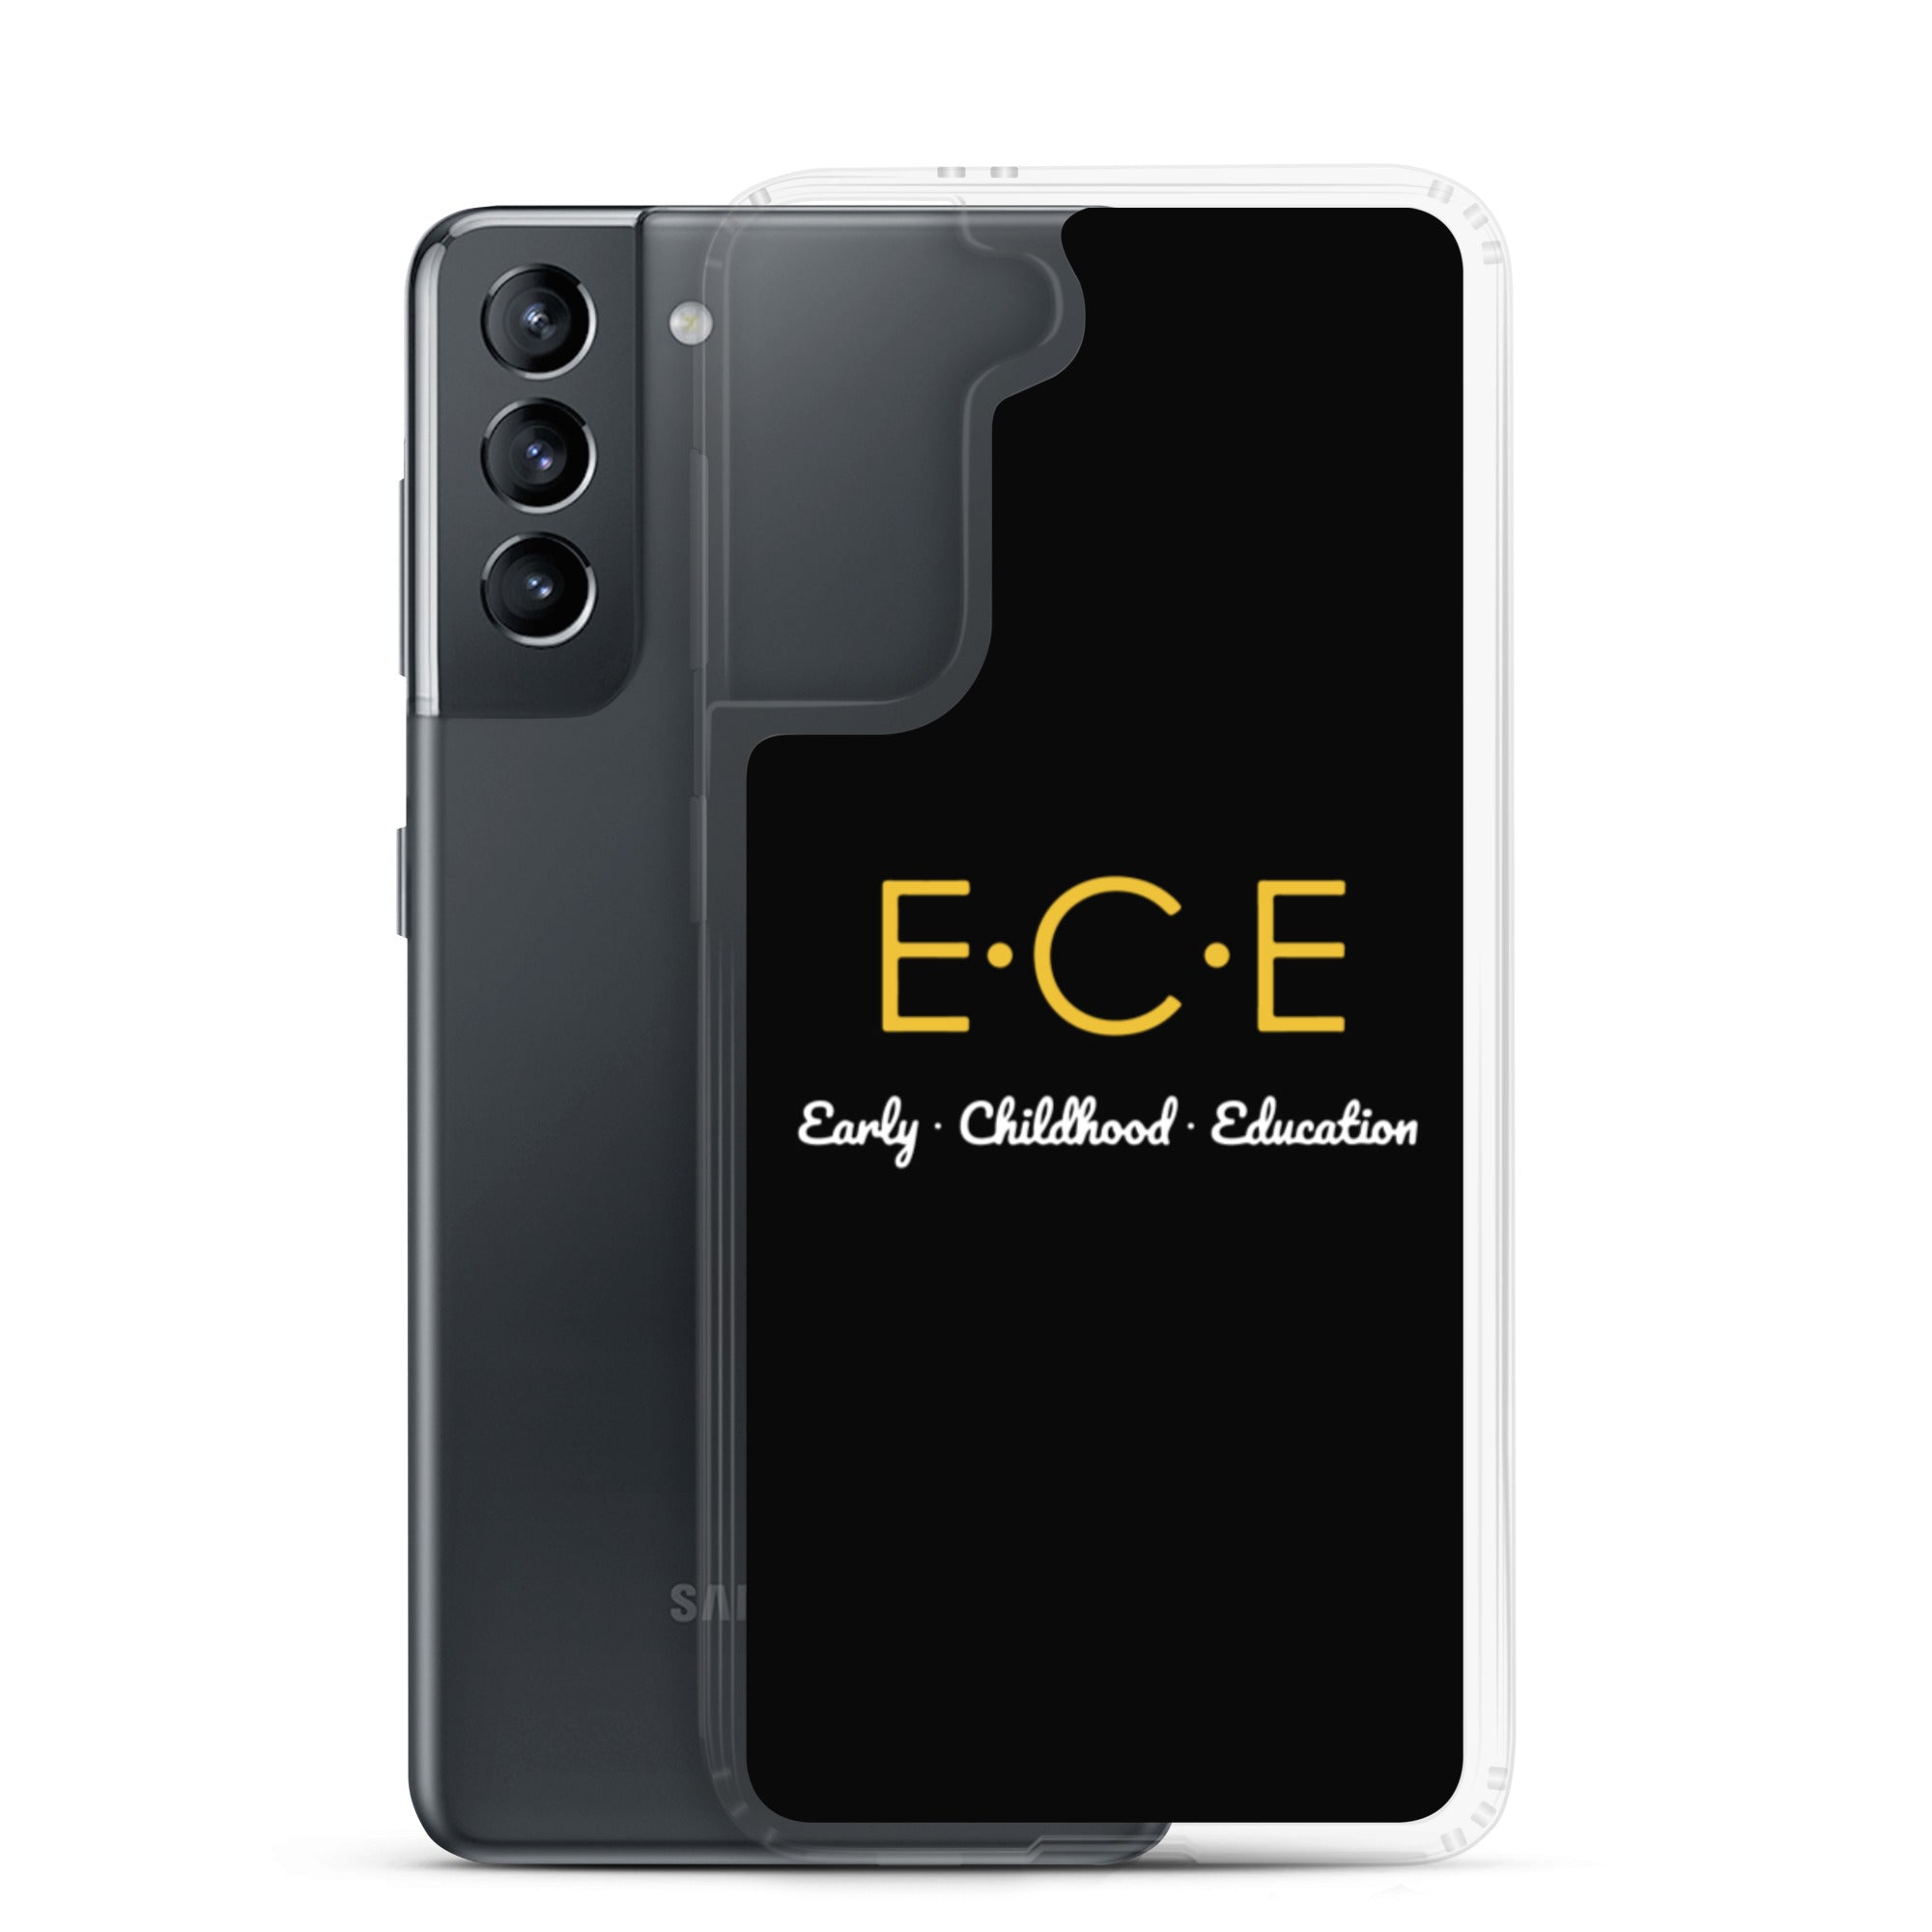 ECE Samsung Case